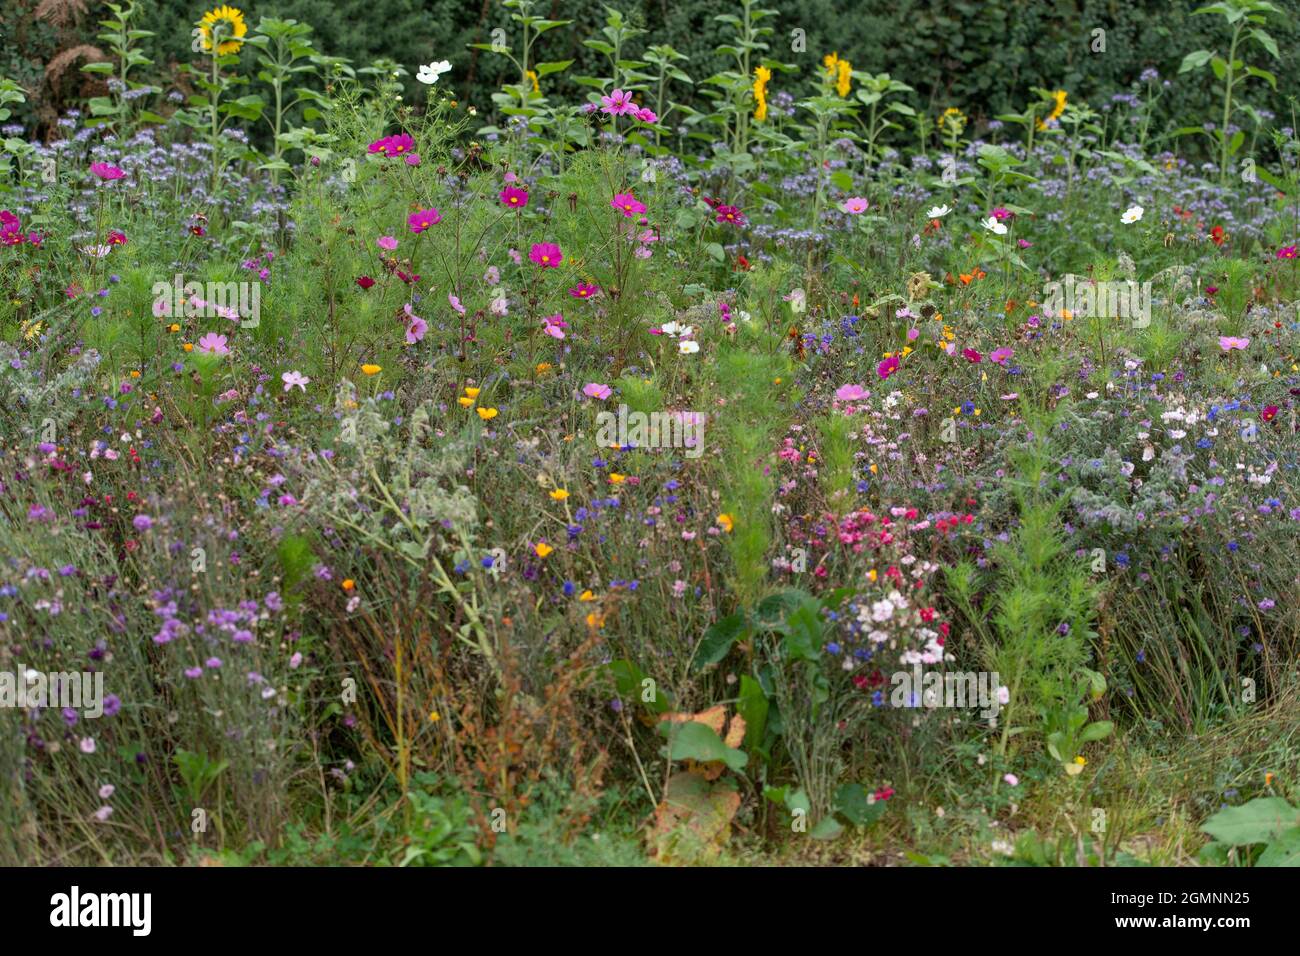 wild flower meadow Stock Photo